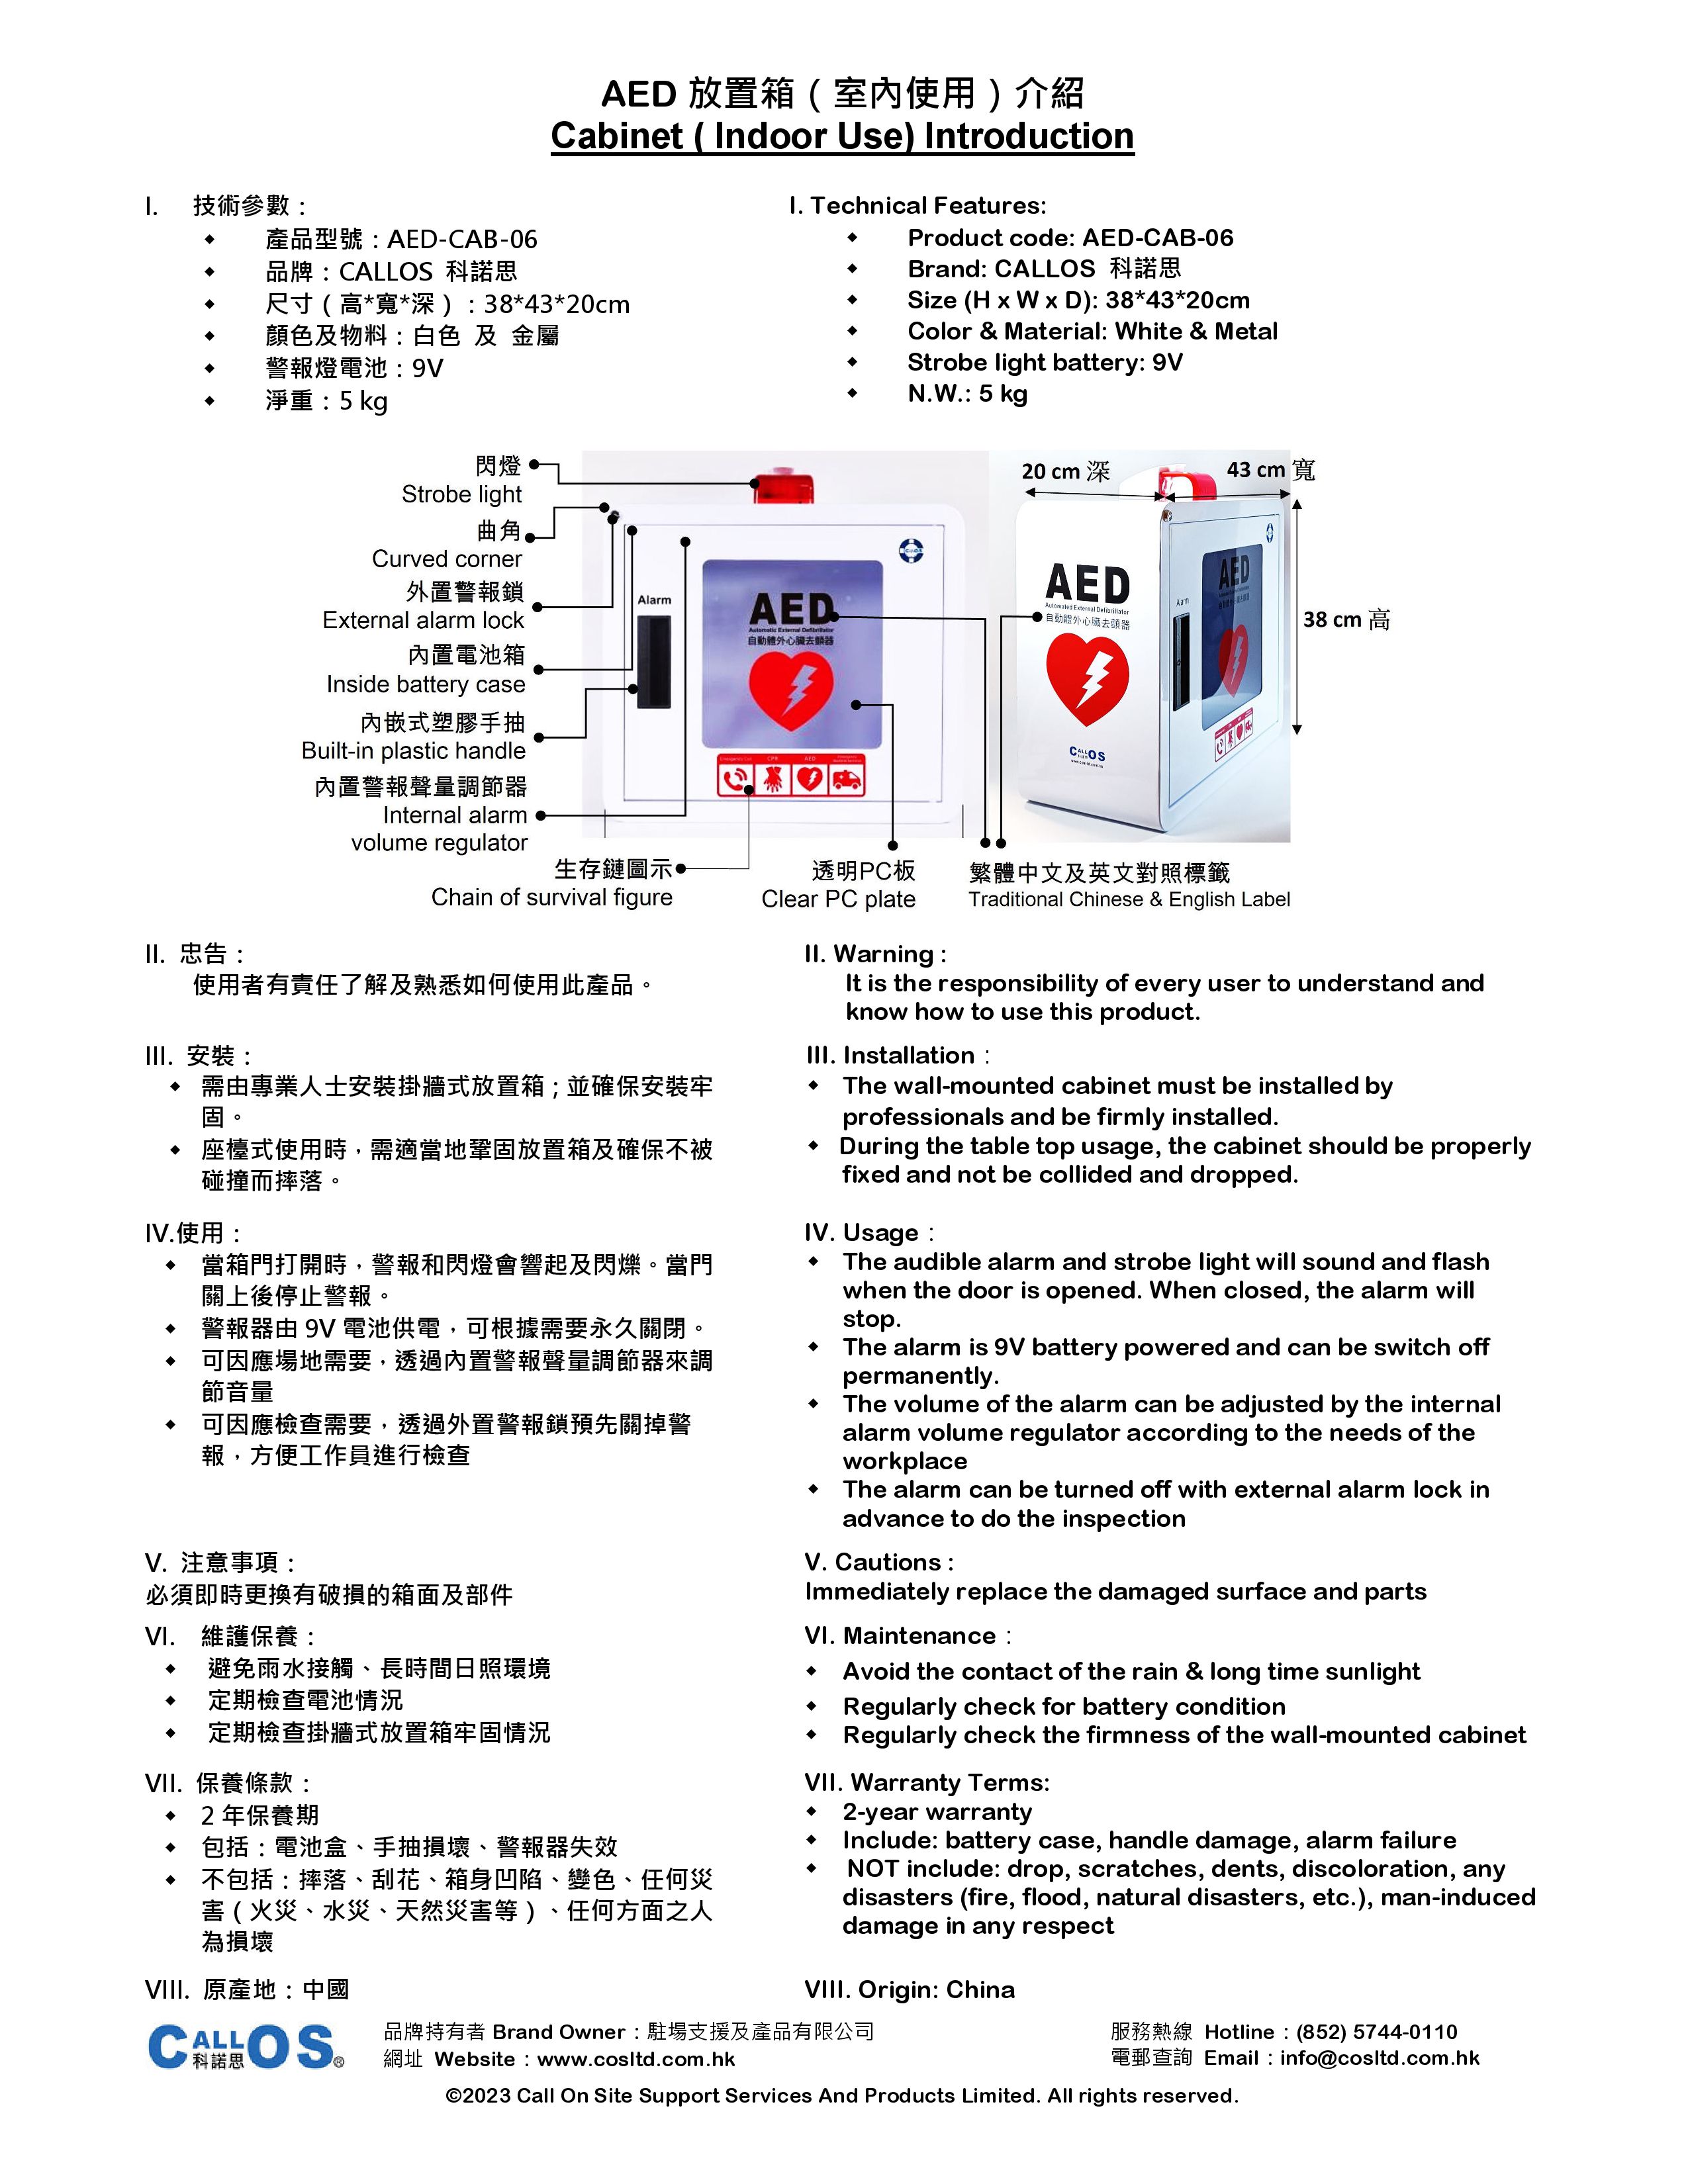 Cabinet AED-CAB-06